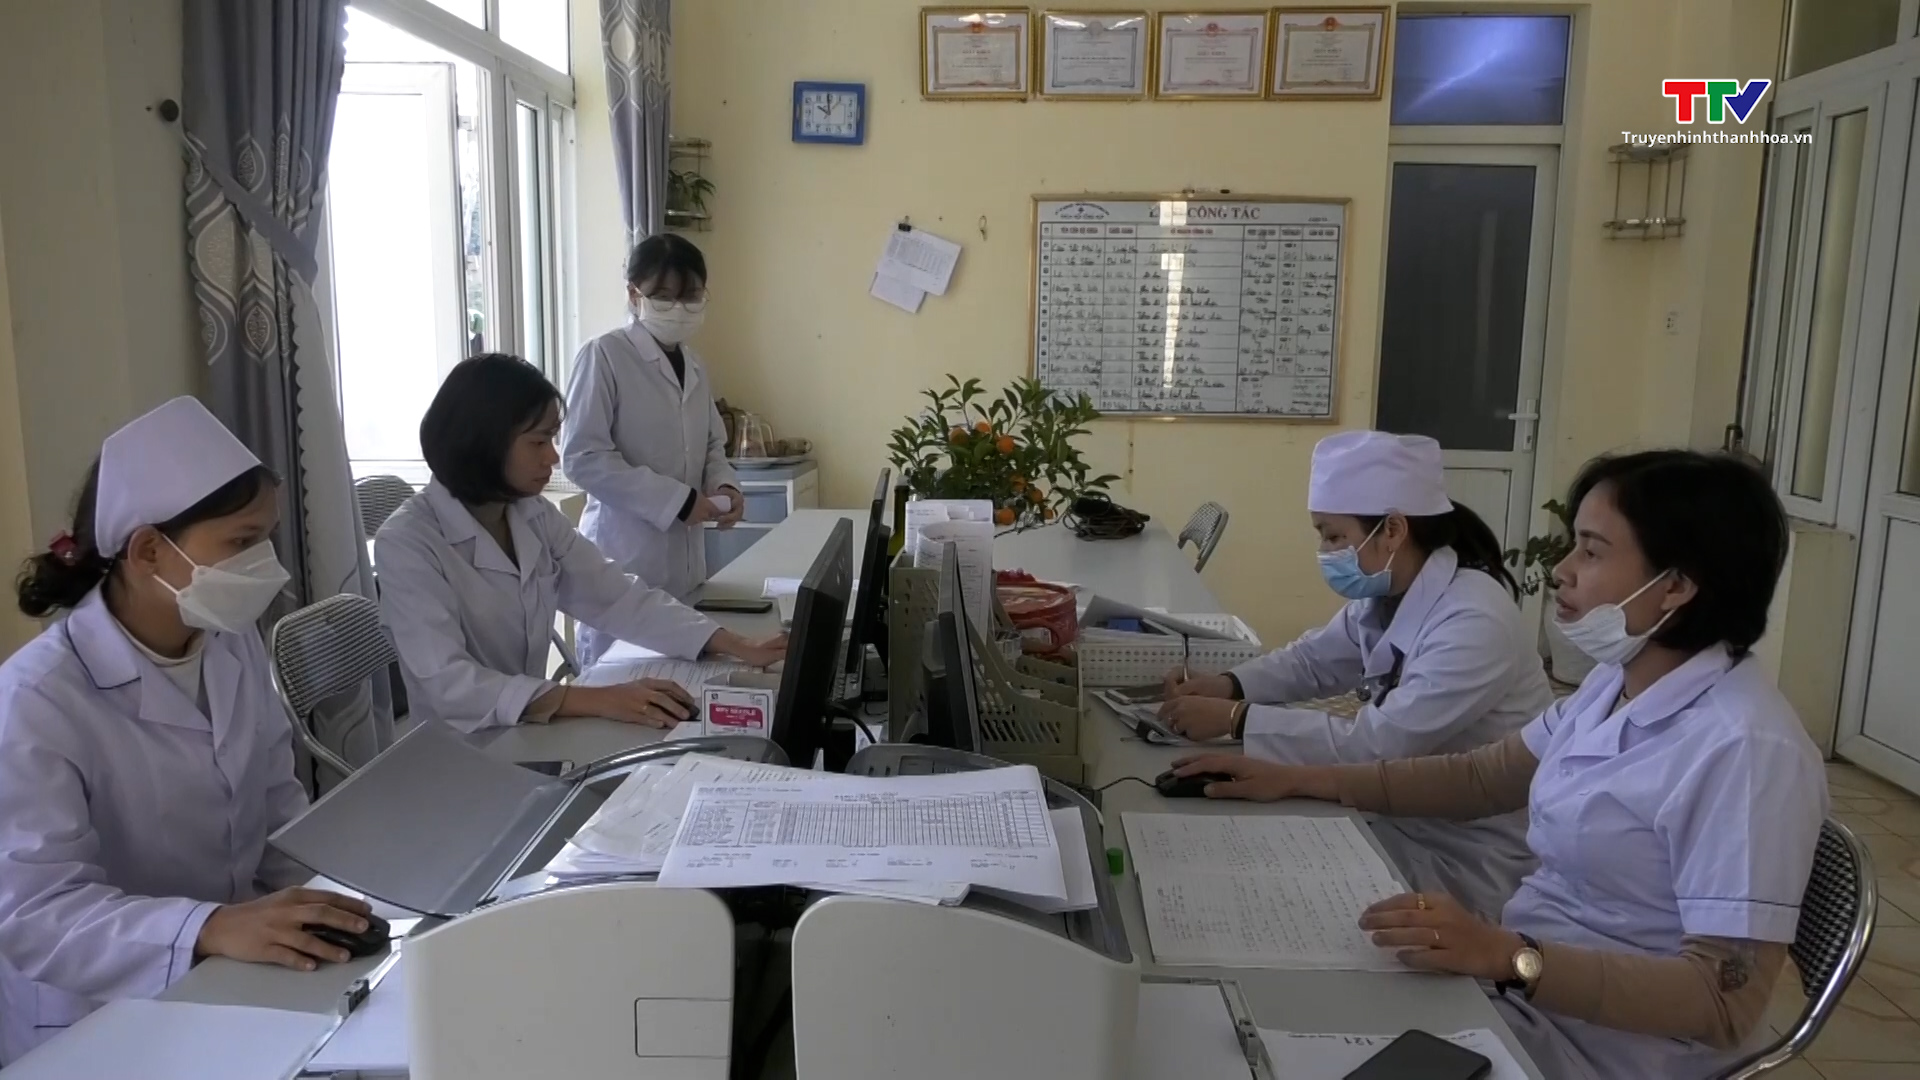 Bệnh viện Đa khoa huyện Thường Xuân làm tốt công tác chăm sóc sức khỏe nhân dân - Ảnh 2.